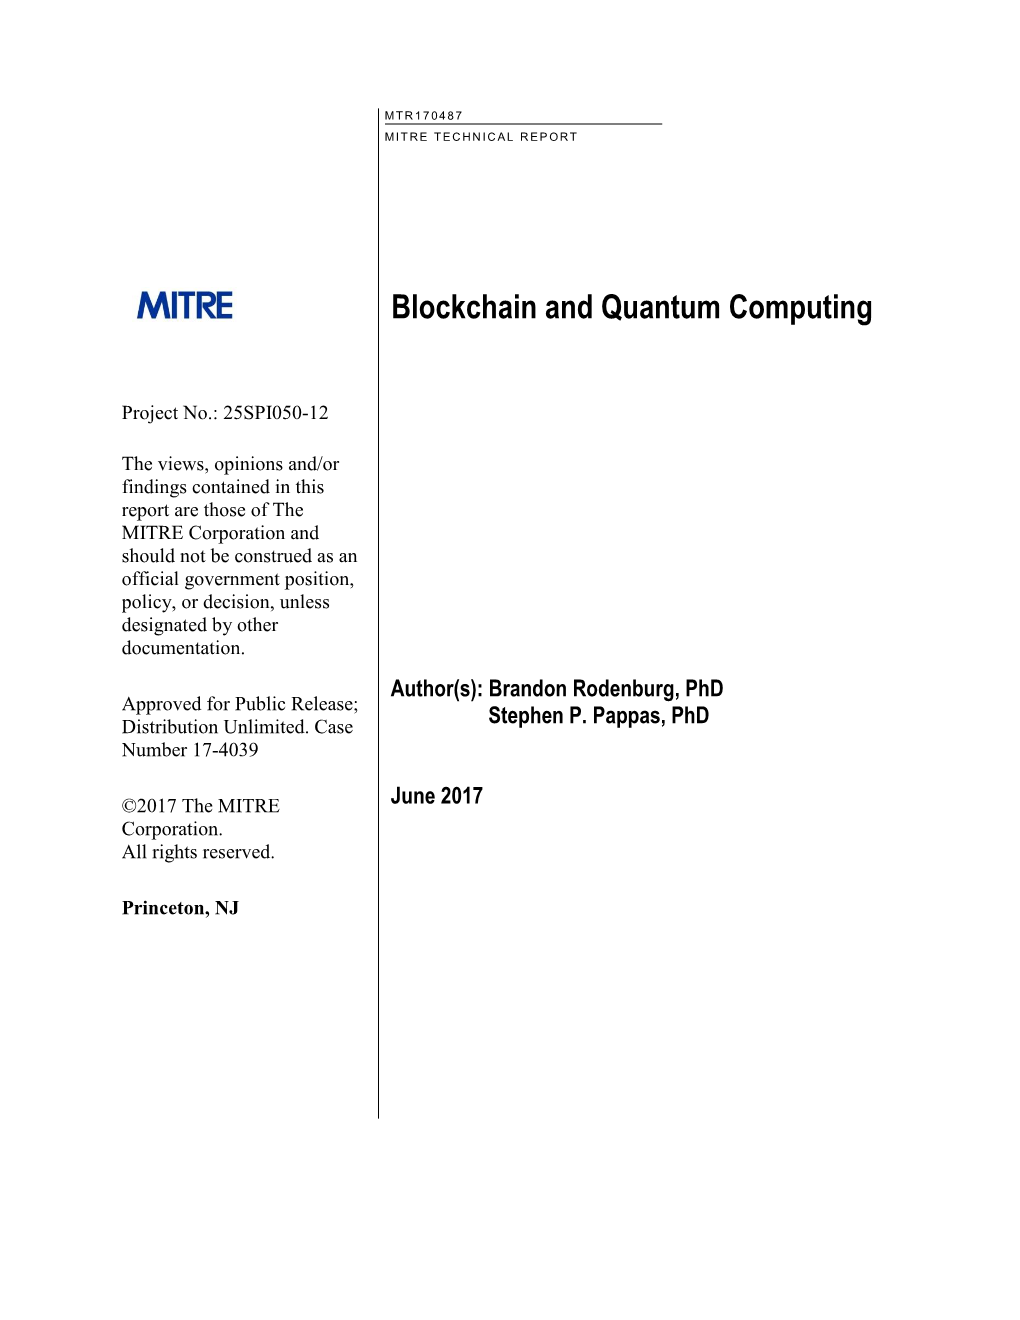 Blockchain and Quantum Computing